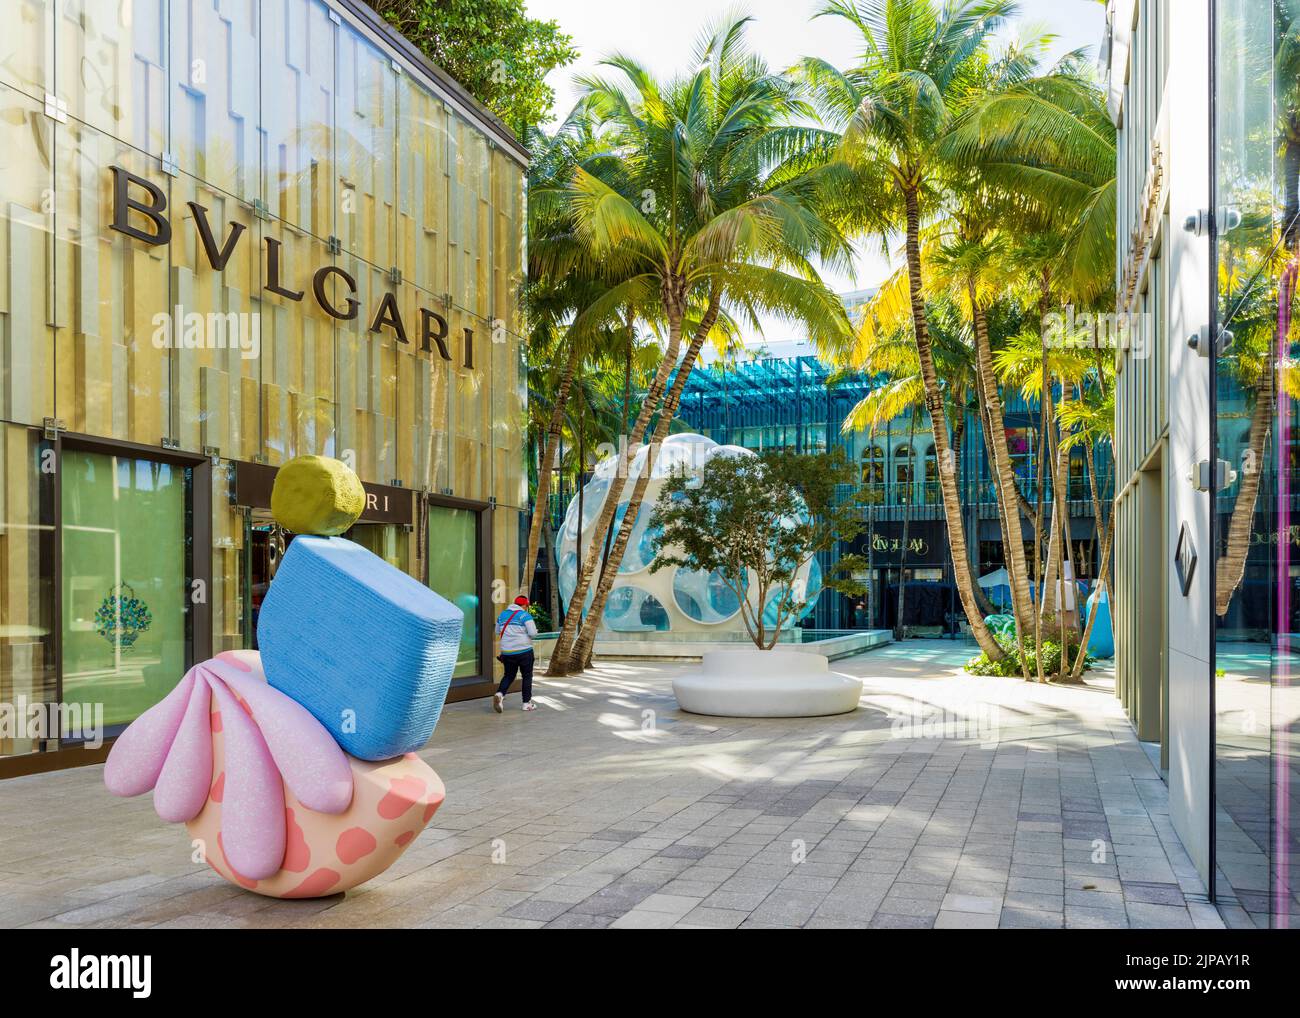 Quartier design, South Miami, Miami Dade, Floride, États-Unis Banque D'Images